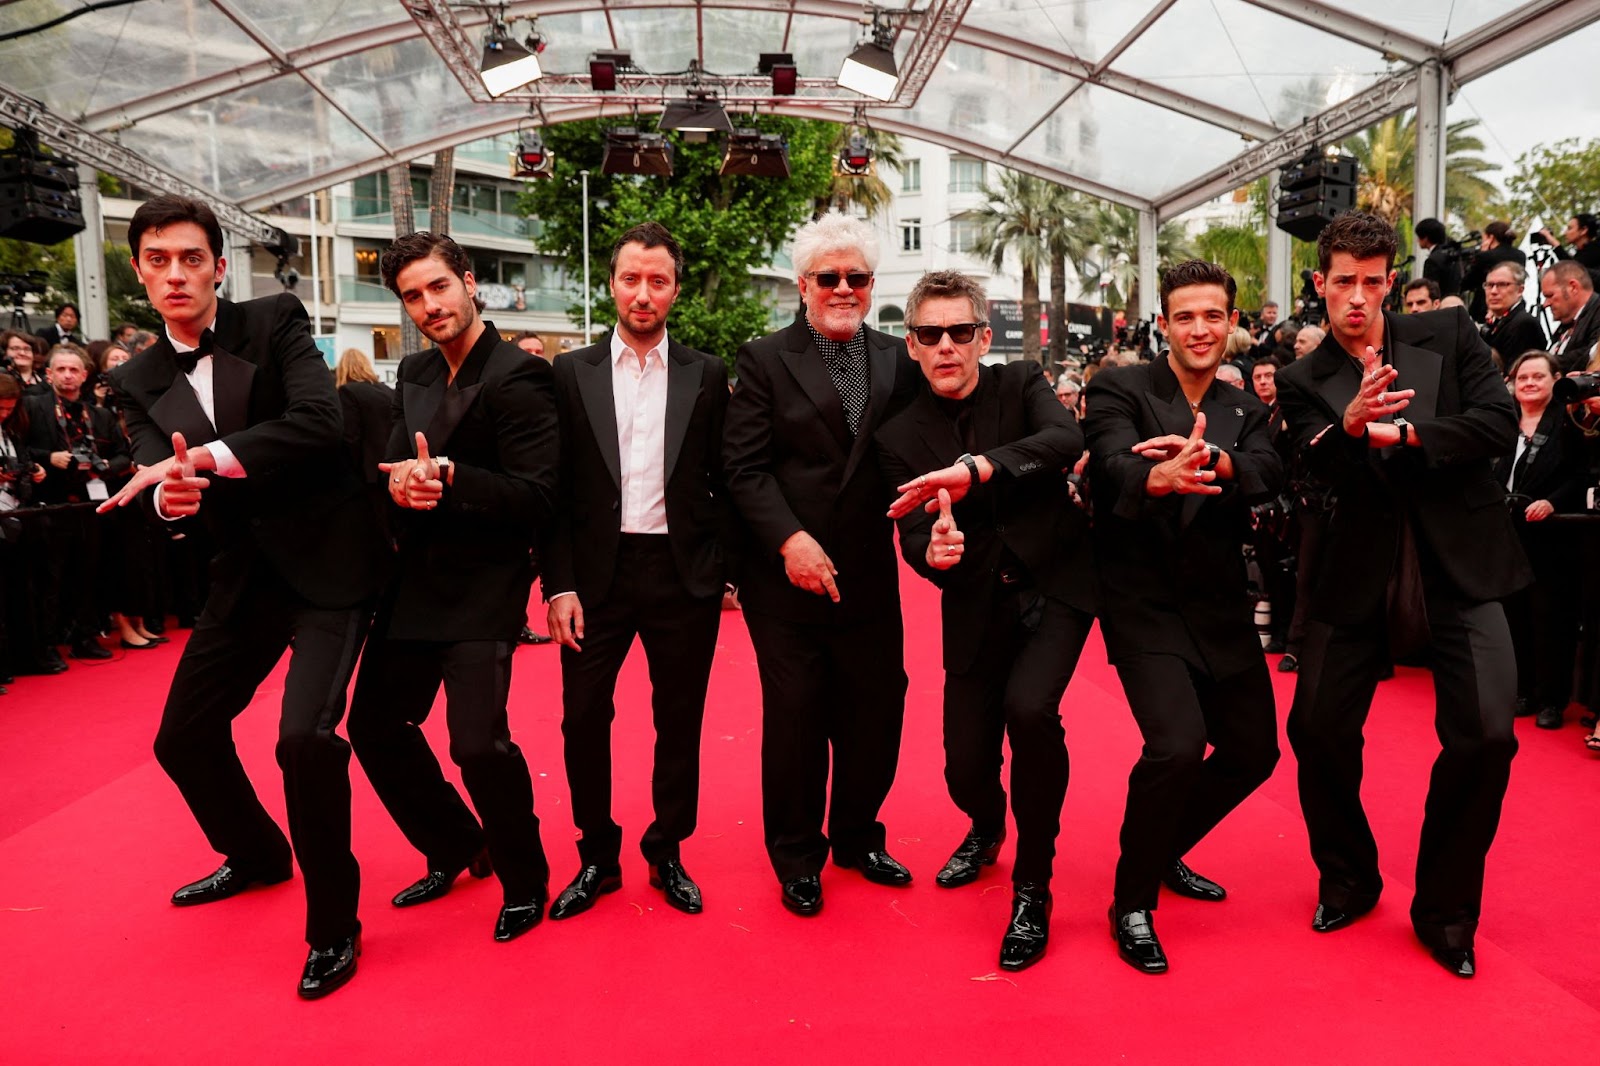 El cast de Extraña forma de vida parado en la alfombra roja del Festival de Cannes. En el centro se ve al director Pedro Almodóvar.